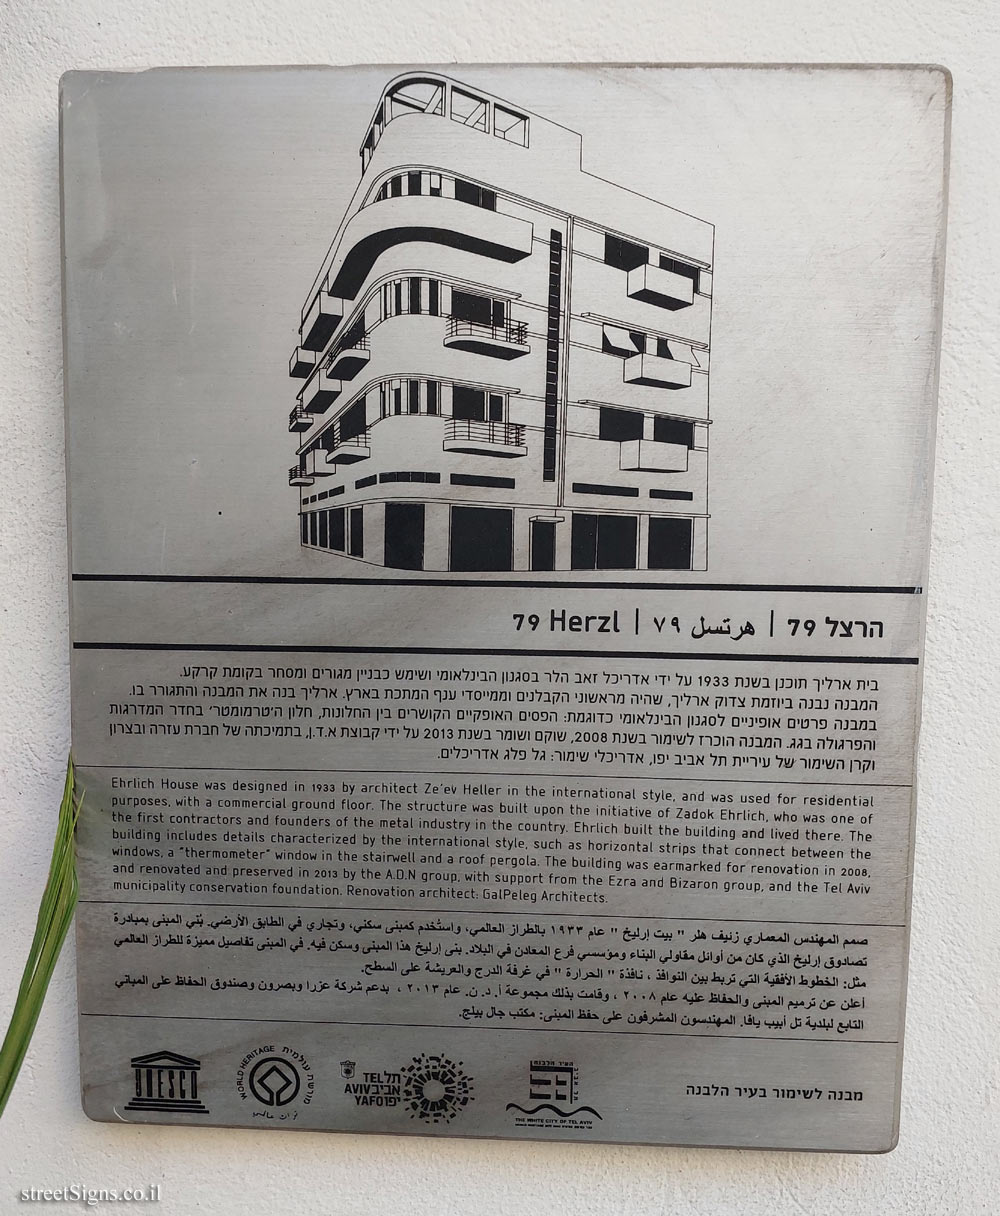 Tel Aviv - buildings for conservation - 79 Herzl